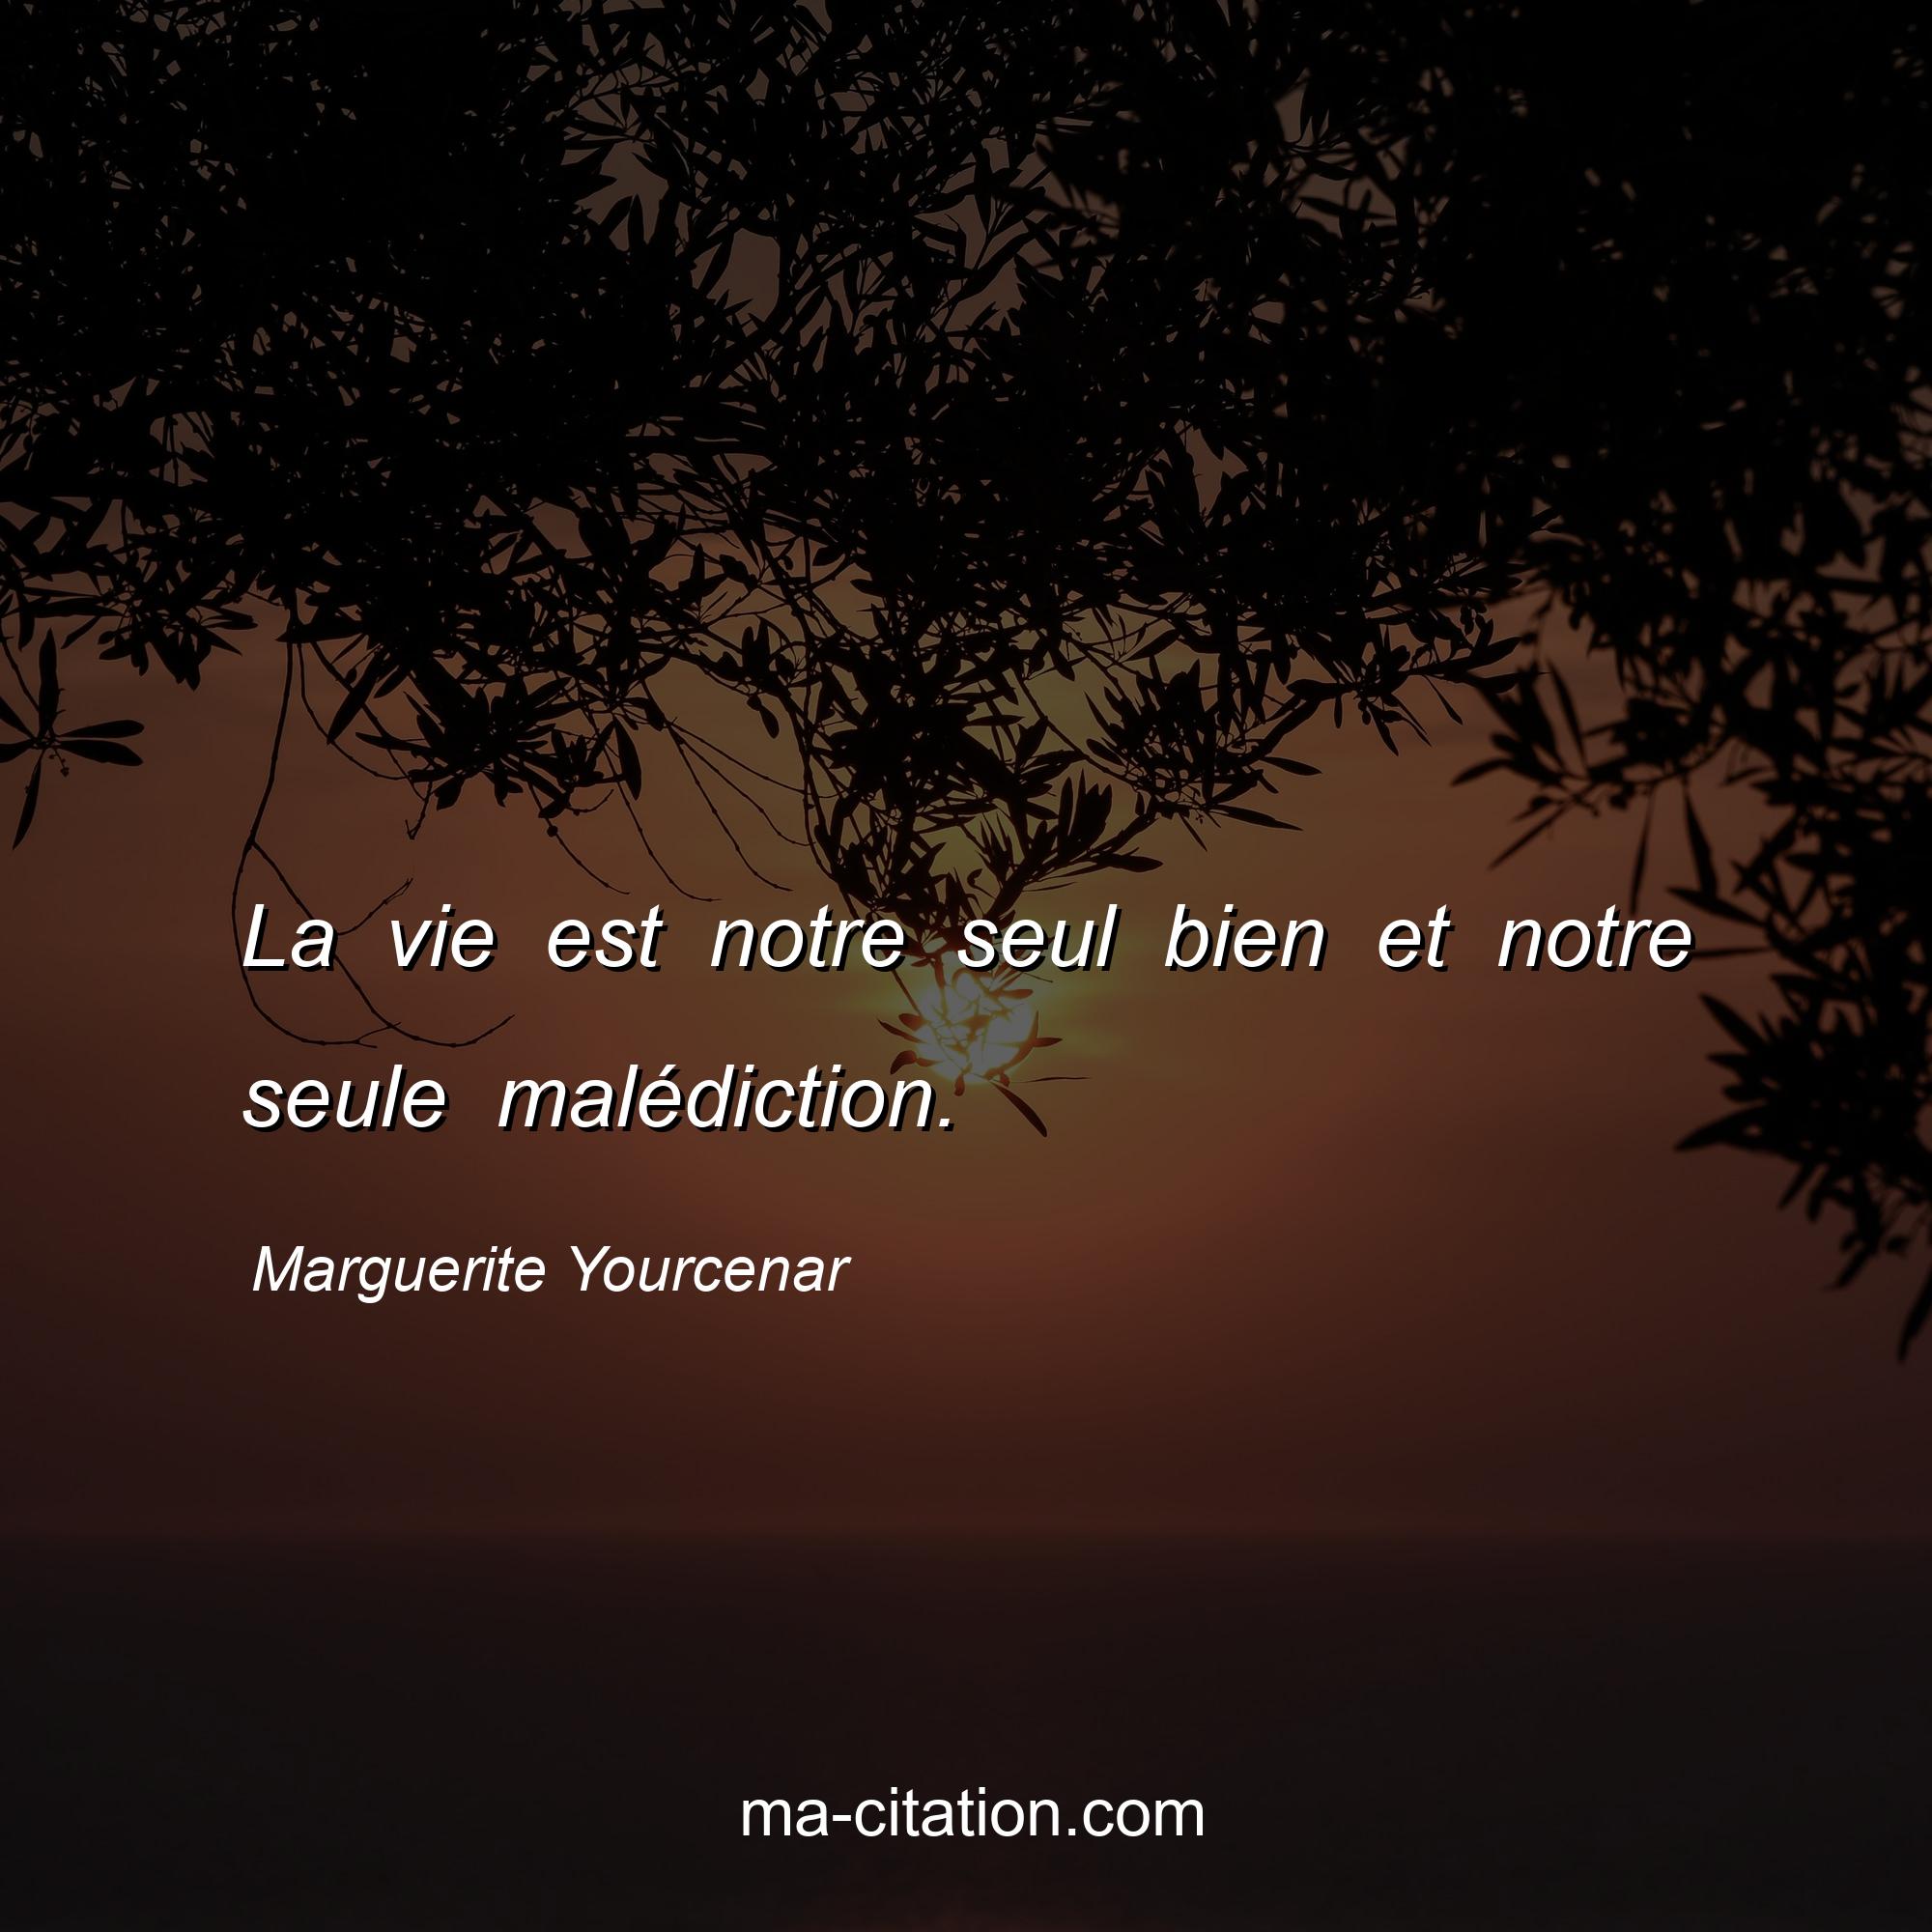 Marguerite Yourcenar : La vie est notre seul bien et notre seule malédiction.